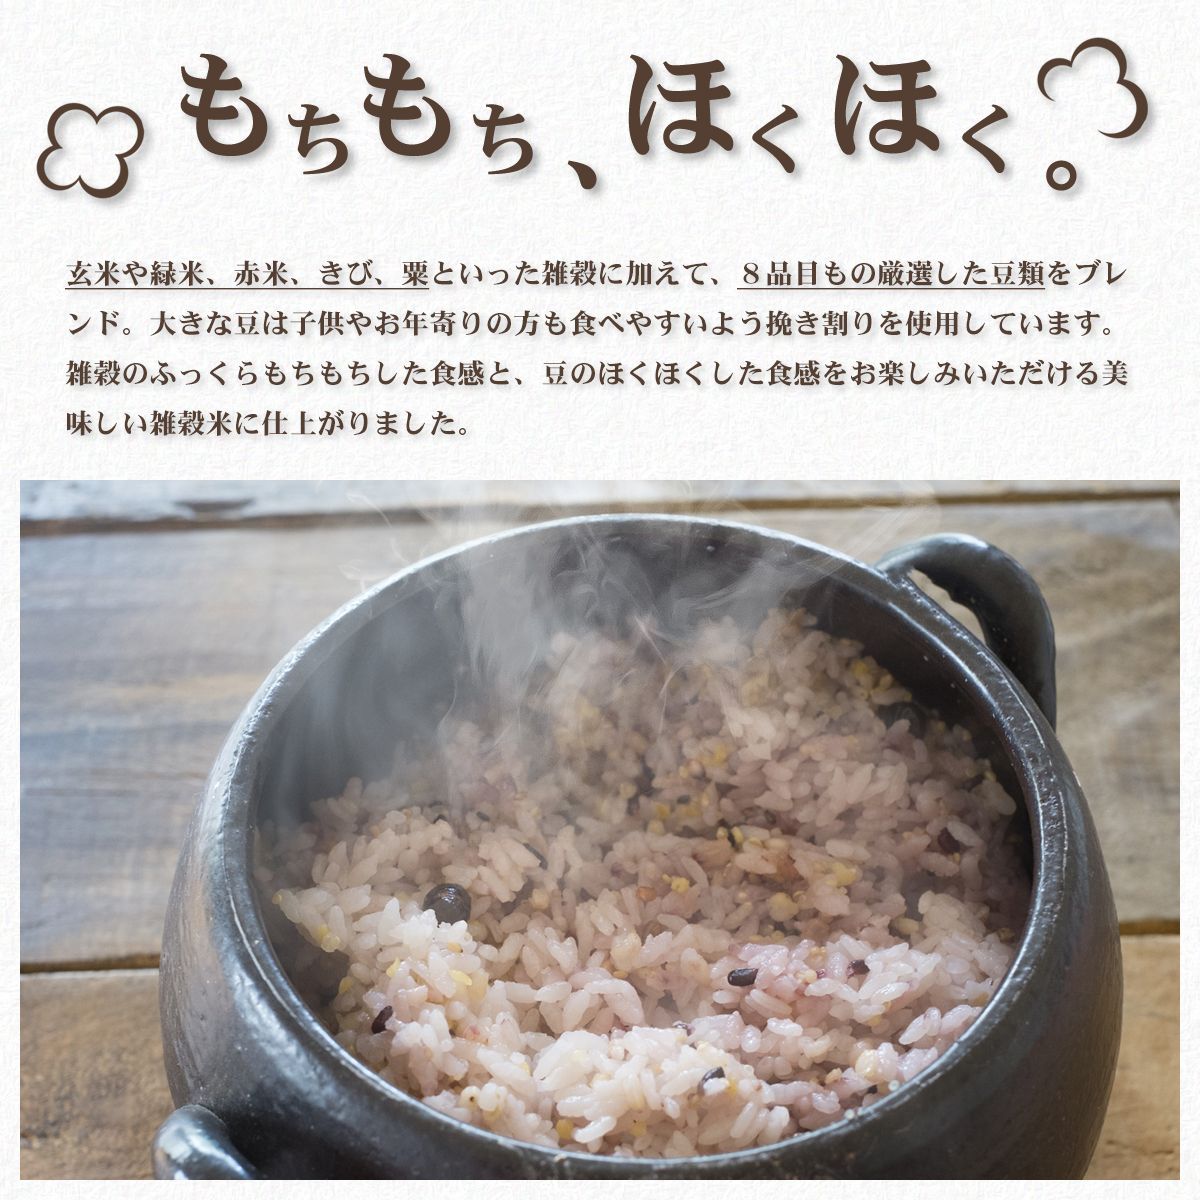 グルテンフリー雑穀米 - 米・雑穀・粉類